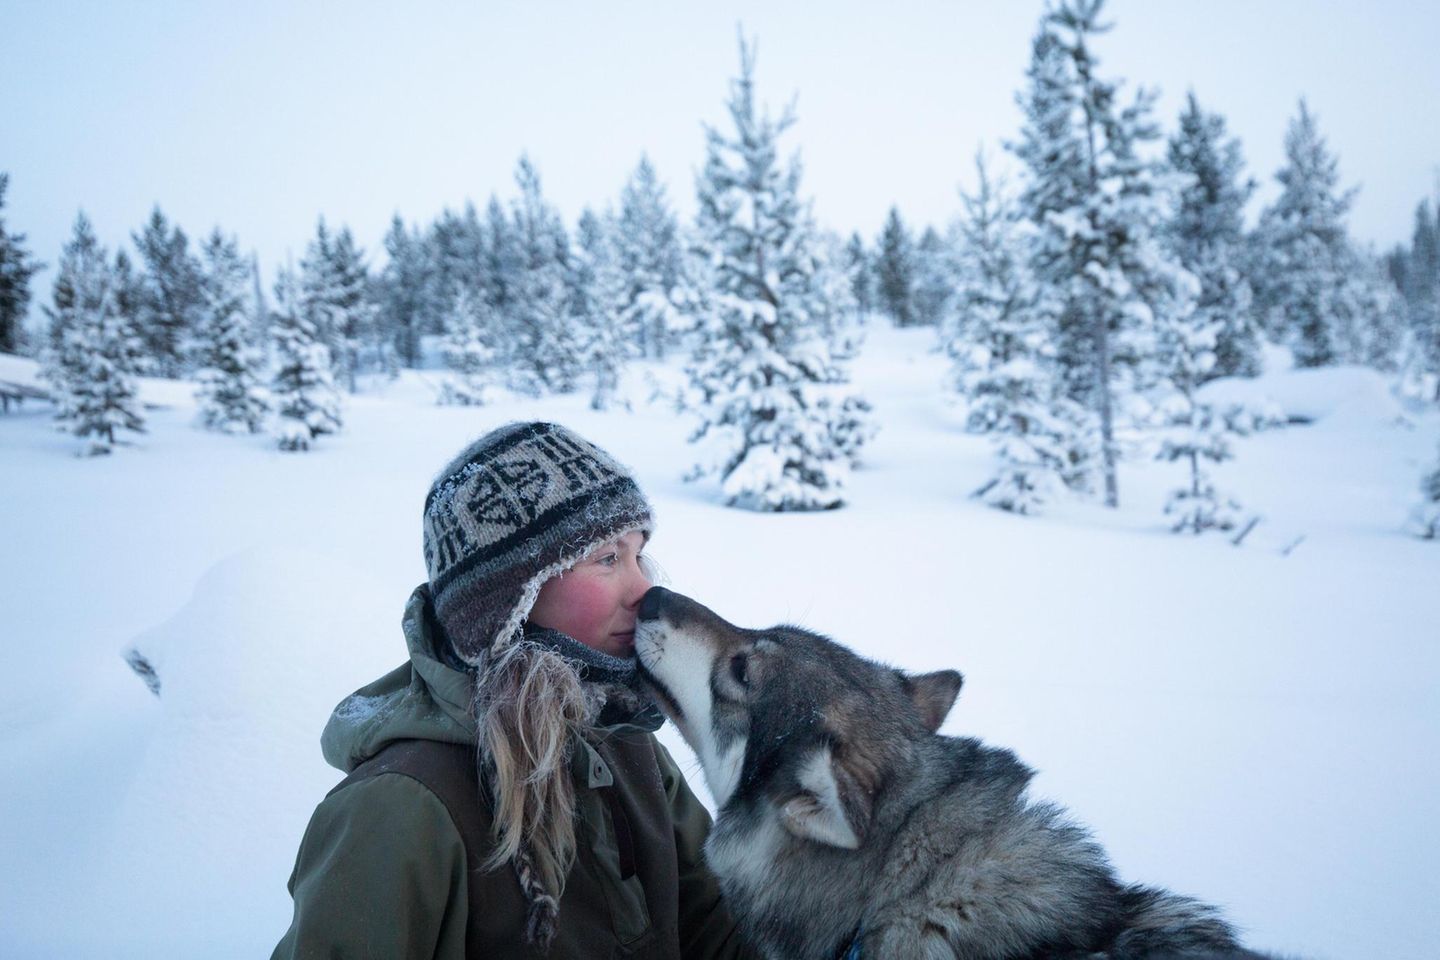 Tinja Myllykangas lebt gut 250 Kilometer nördlich des Polarkreises, mitten in der Einsamkeit, doch nicht allein. Ihr Freund Alex, der Schlittenhunde züchtet, ist bei ihr. Und dann sind da noch ihre eigenen Hunde. Wenn sie von den Tieren spricht, lächeln ihre hellen Augen, und sie schwärmt: "Es sind ­meine besten Freunde. Mit ihnen verfliegen alle Sorgen." Myllykangas hat Biologie studiert, im Süden des Landes, die Stadt aber leichten Herzens verlassen. Sie liebt den Winter oben im Norden, wenn die Temperaturen auf bis zu minus 40 Grad sinken. "Dann zeigt sich die arktische Natur in ihrer ganzen Pracht."